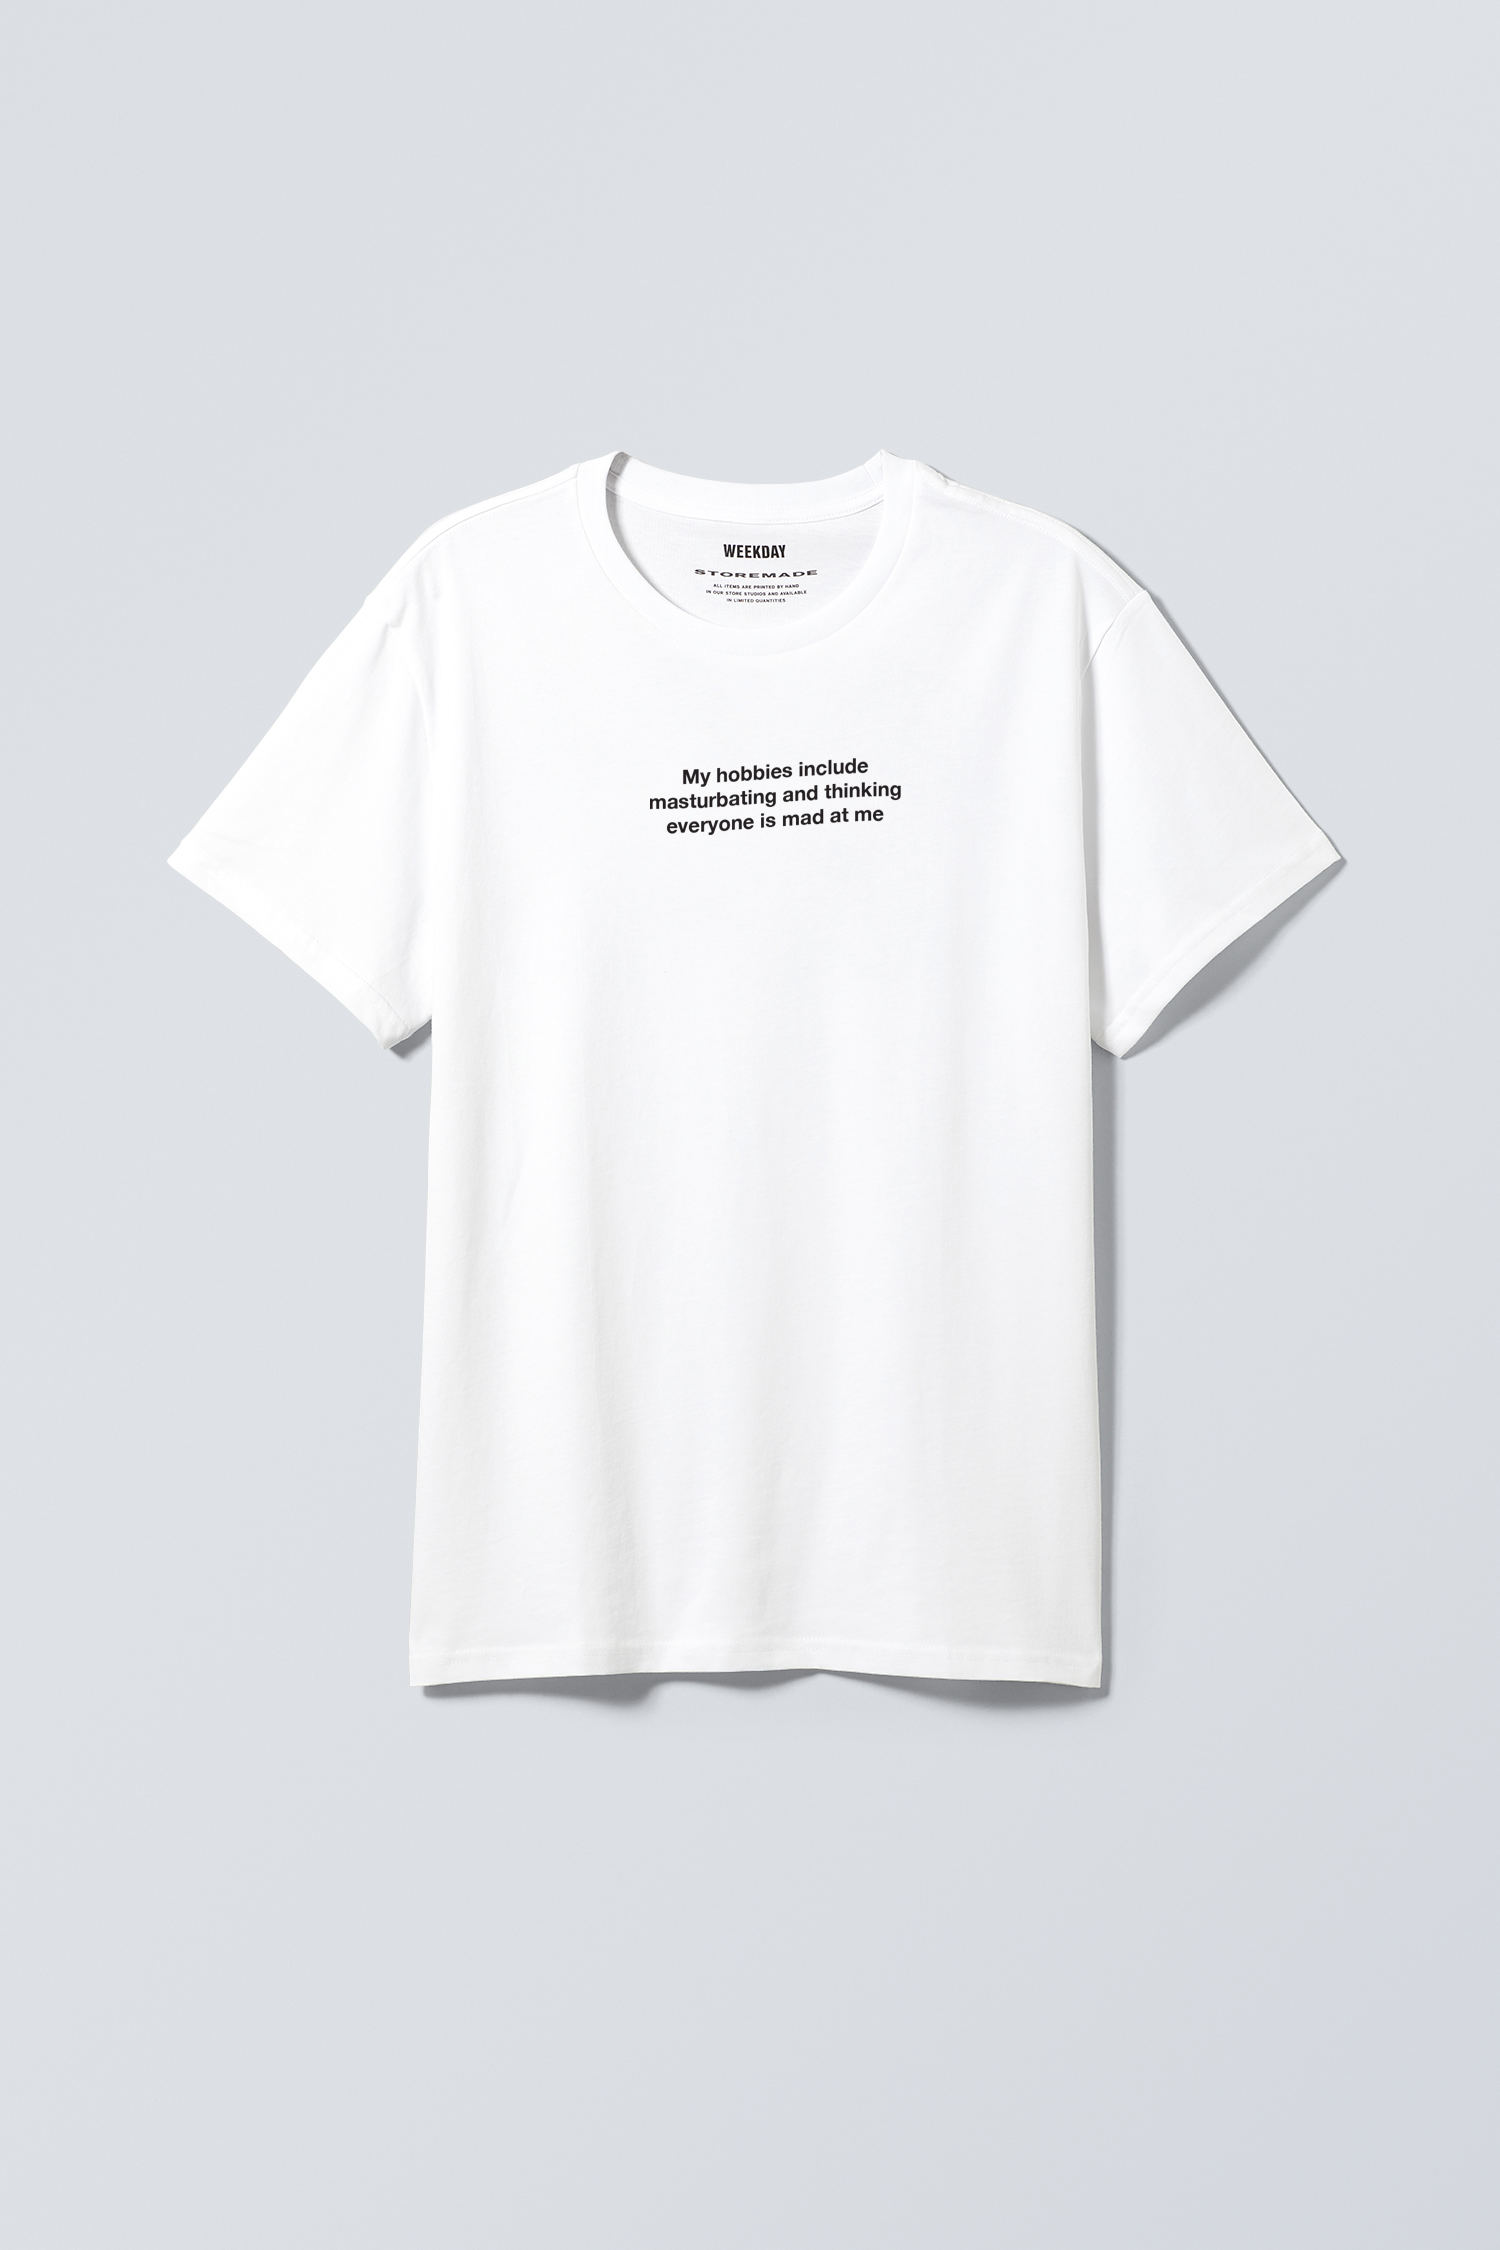 PERSONAL PURSUITS - Zeitgeist T-Shirt - 0